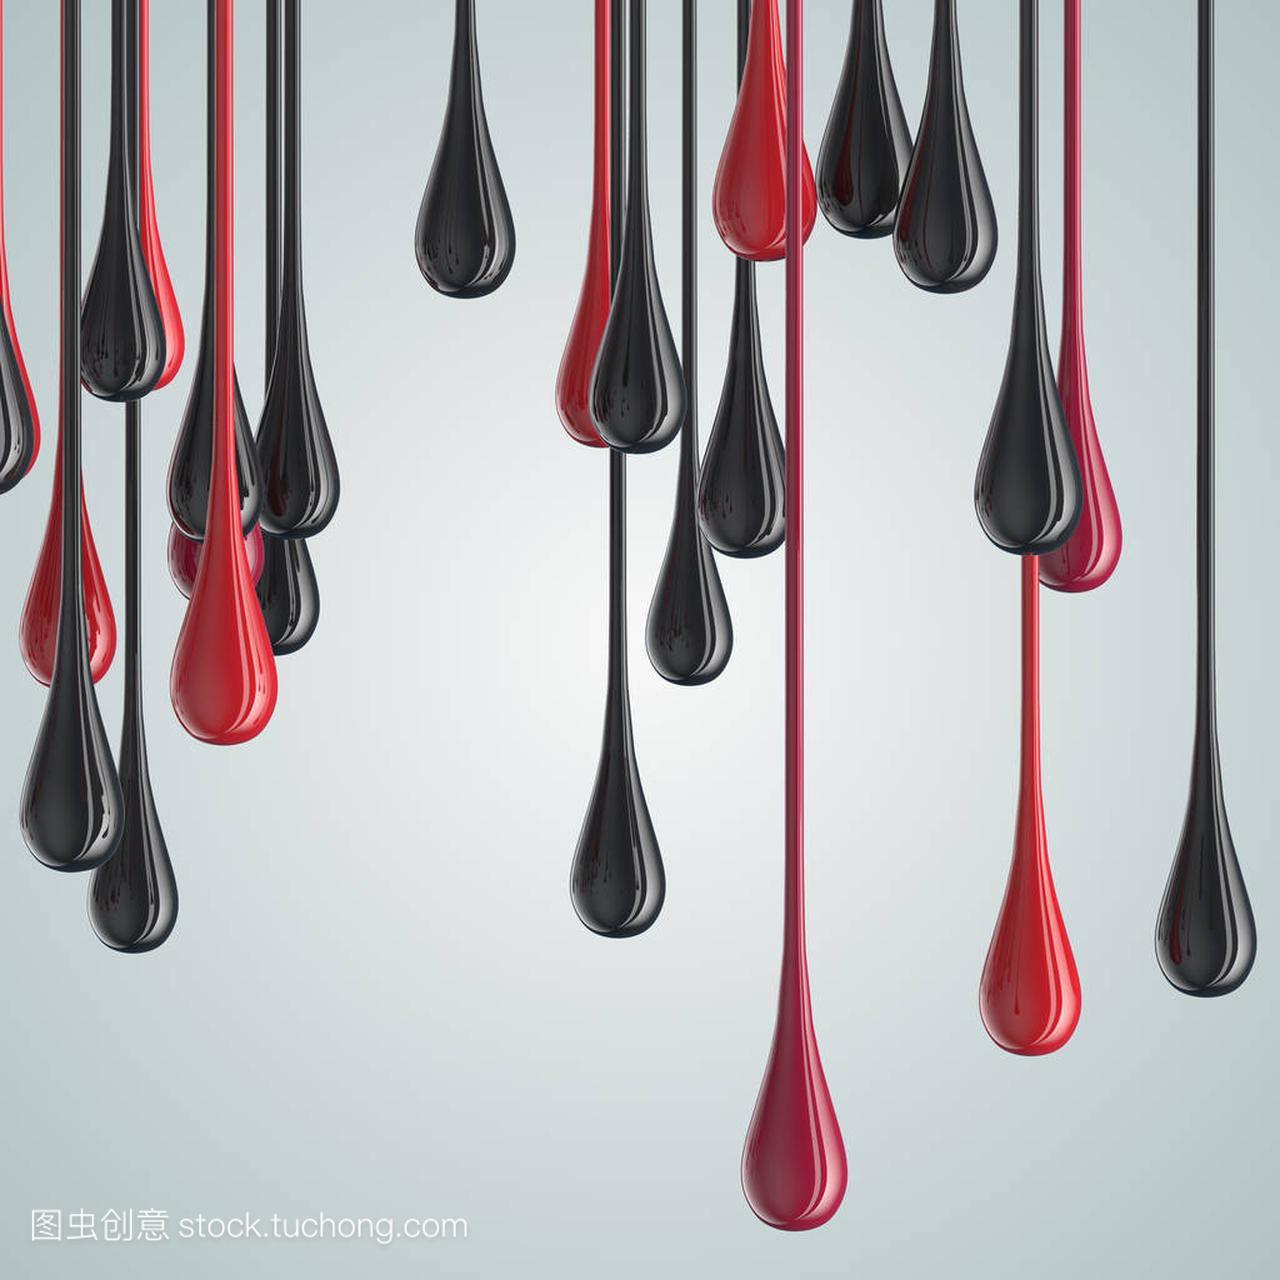 3d 的红色和黑色光滑的油漆滴 blob